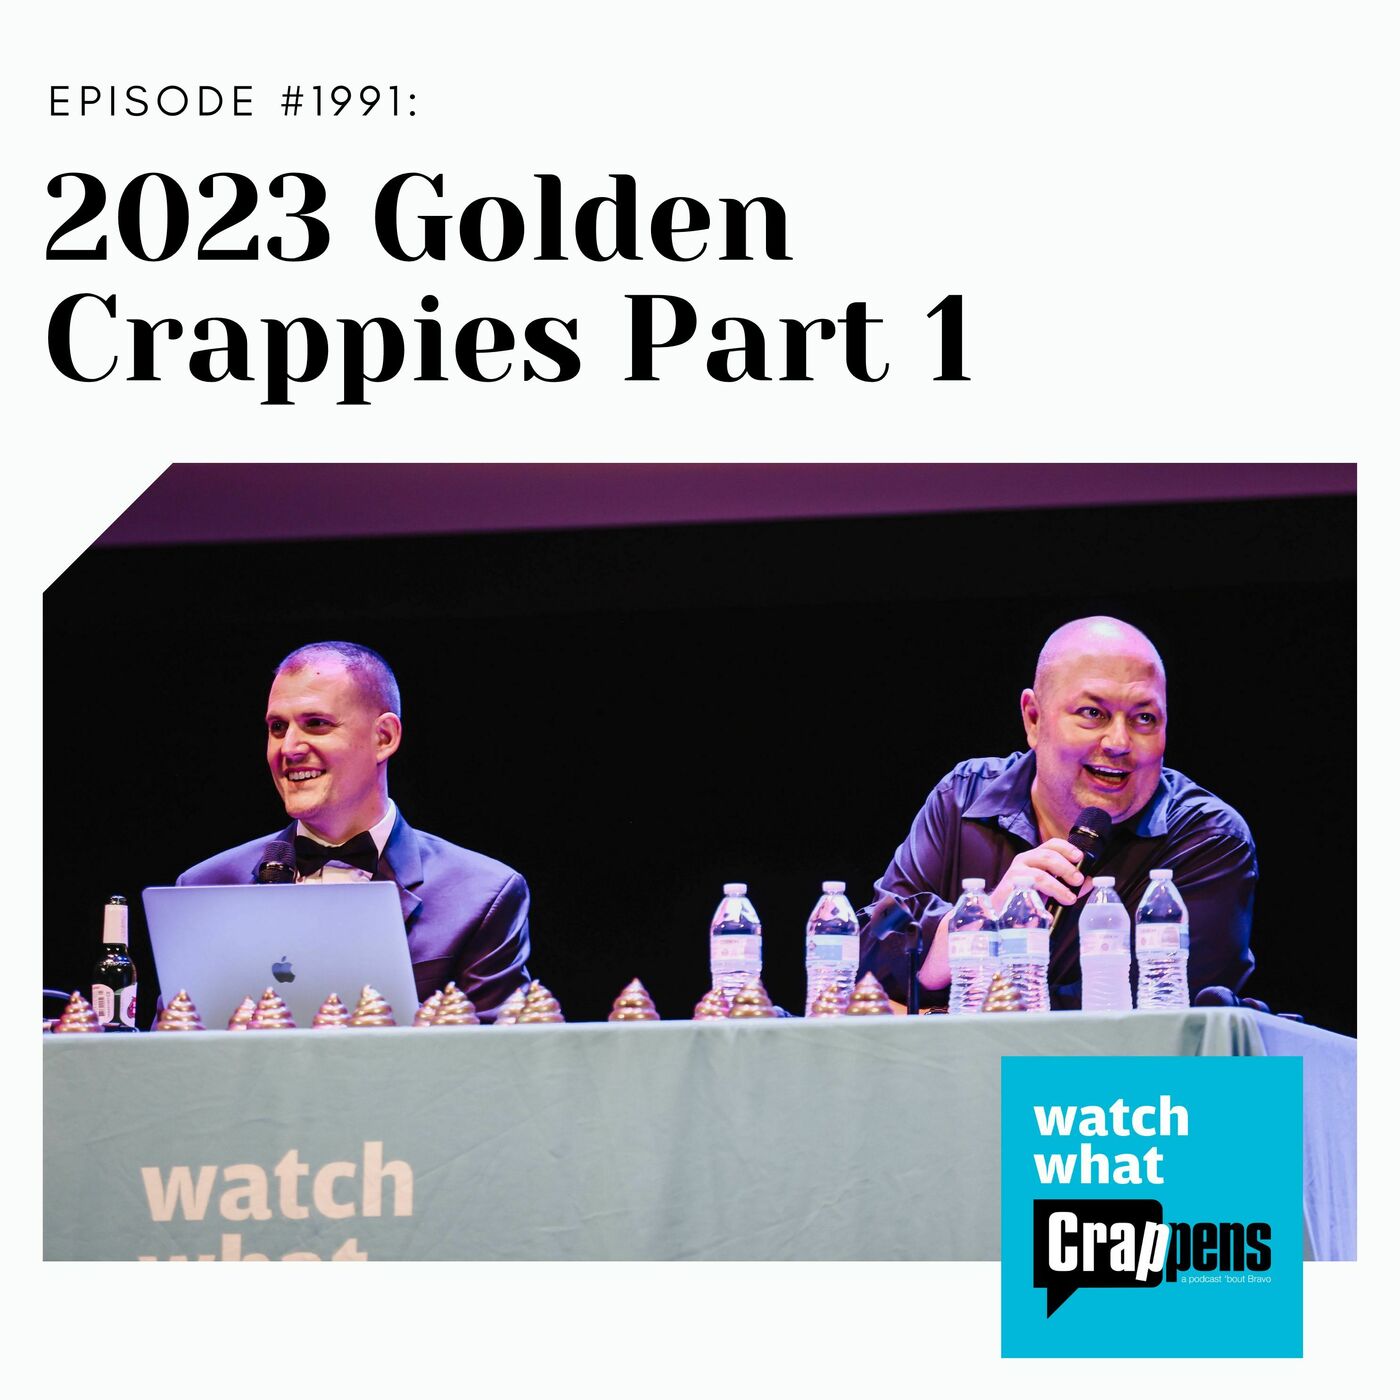 2023 Golden Crappies, Part 1